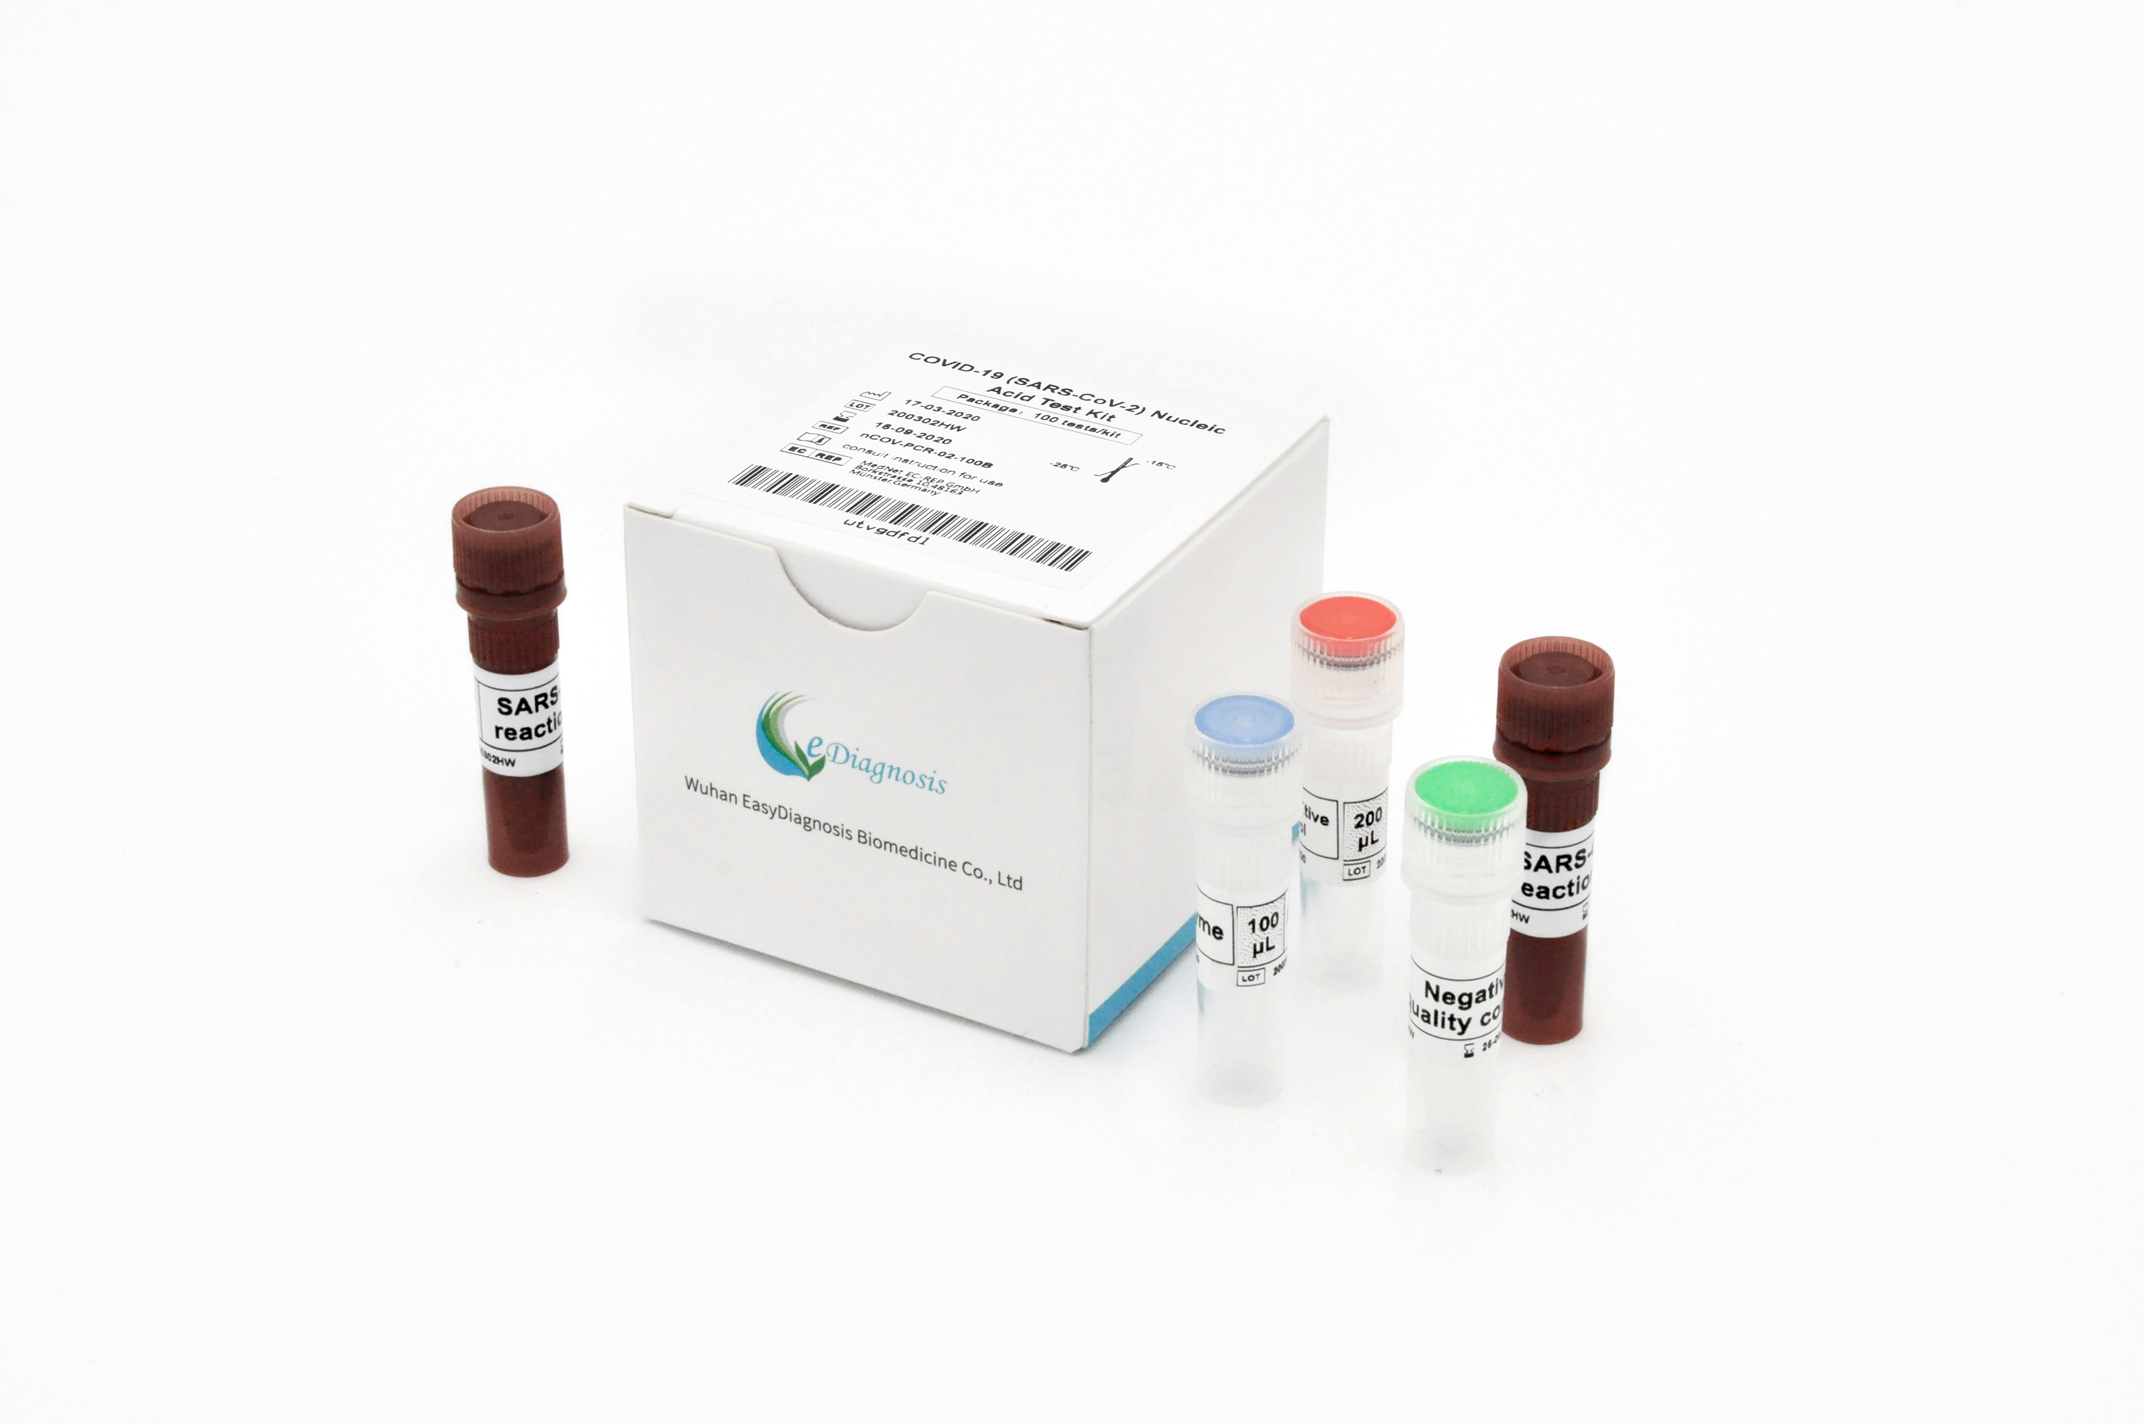 【明德】新型冠状病毒2019-nCoV核酸检测试剂盒(荧光PCR法) / 大包装:25人份/盒、50人份/盒、100人份/盒。单管单人份包装:25人份/盒、50人份/盒、100人份/盒